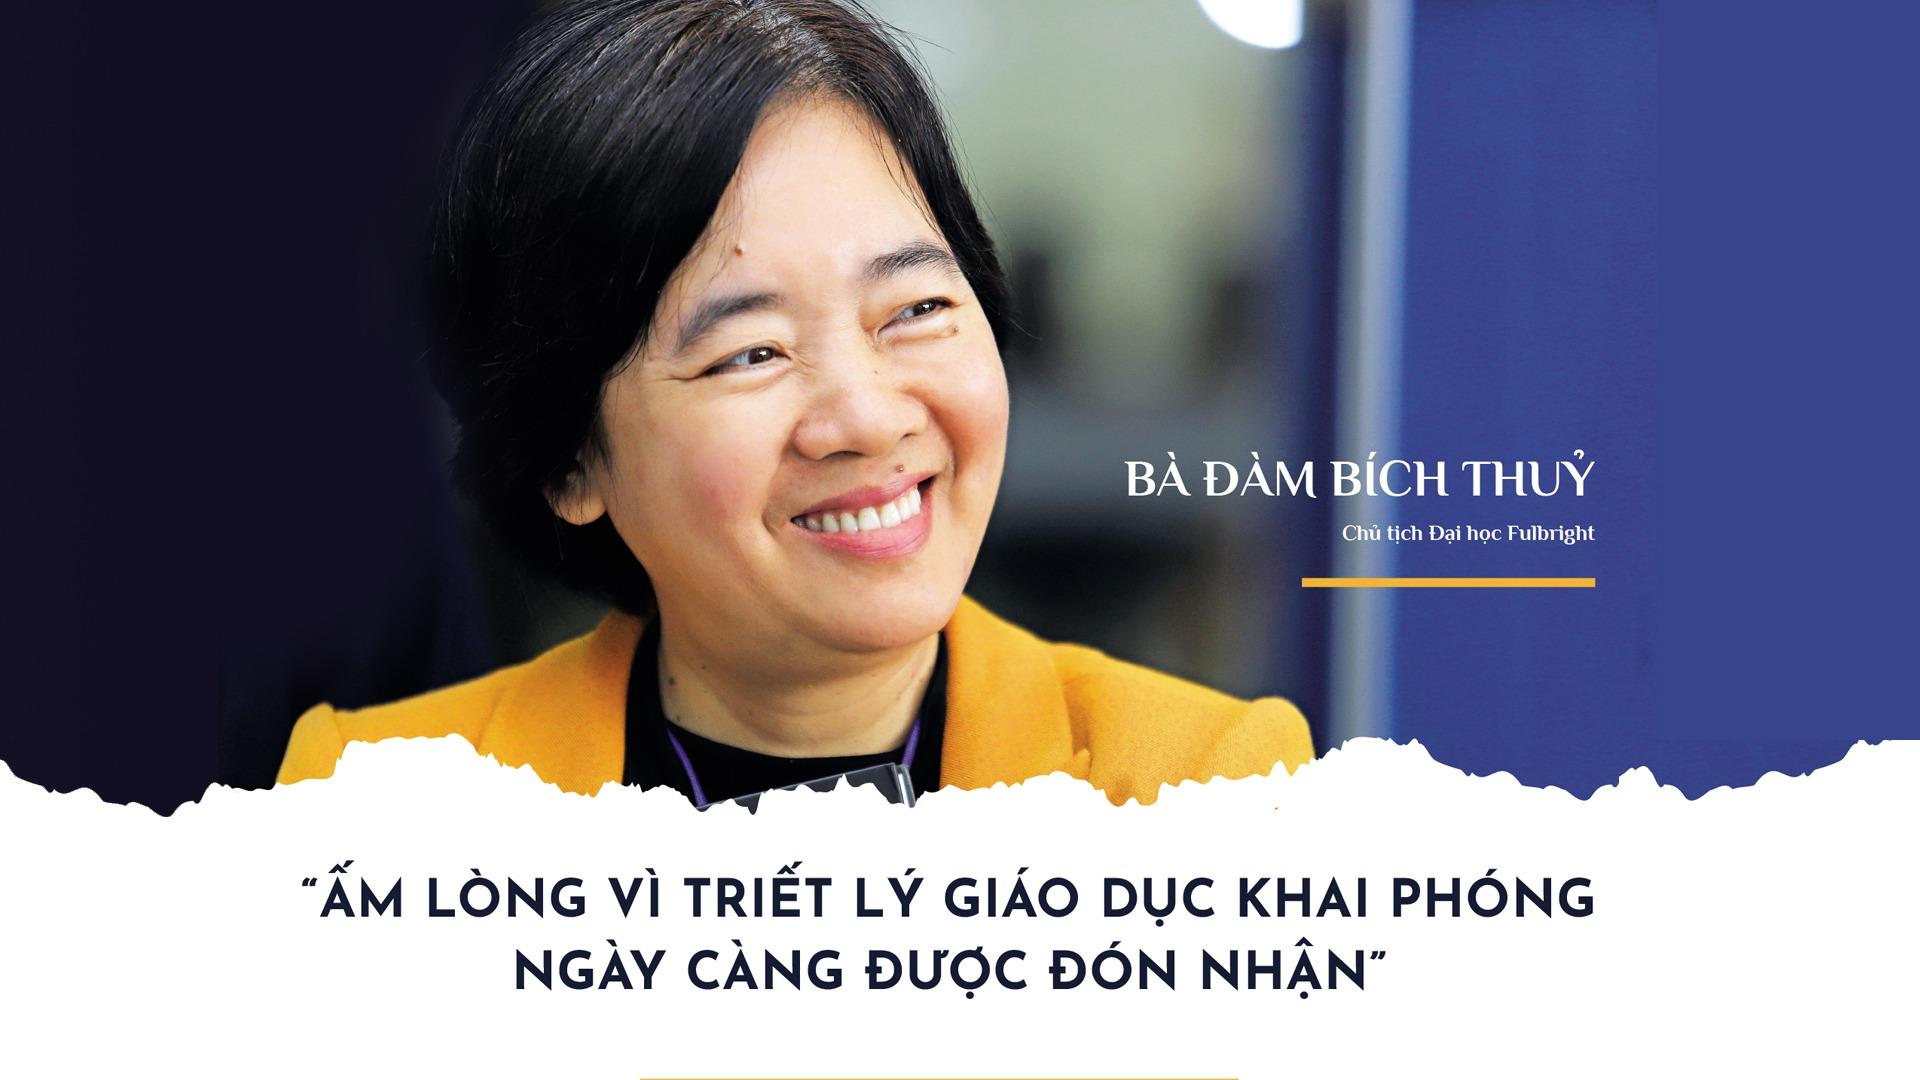 Học để hành thôi là chưa đủ - Cô Đàm Bích Thủy, Chủ tịch ĐH Fulbright Việt Nam | EduStation